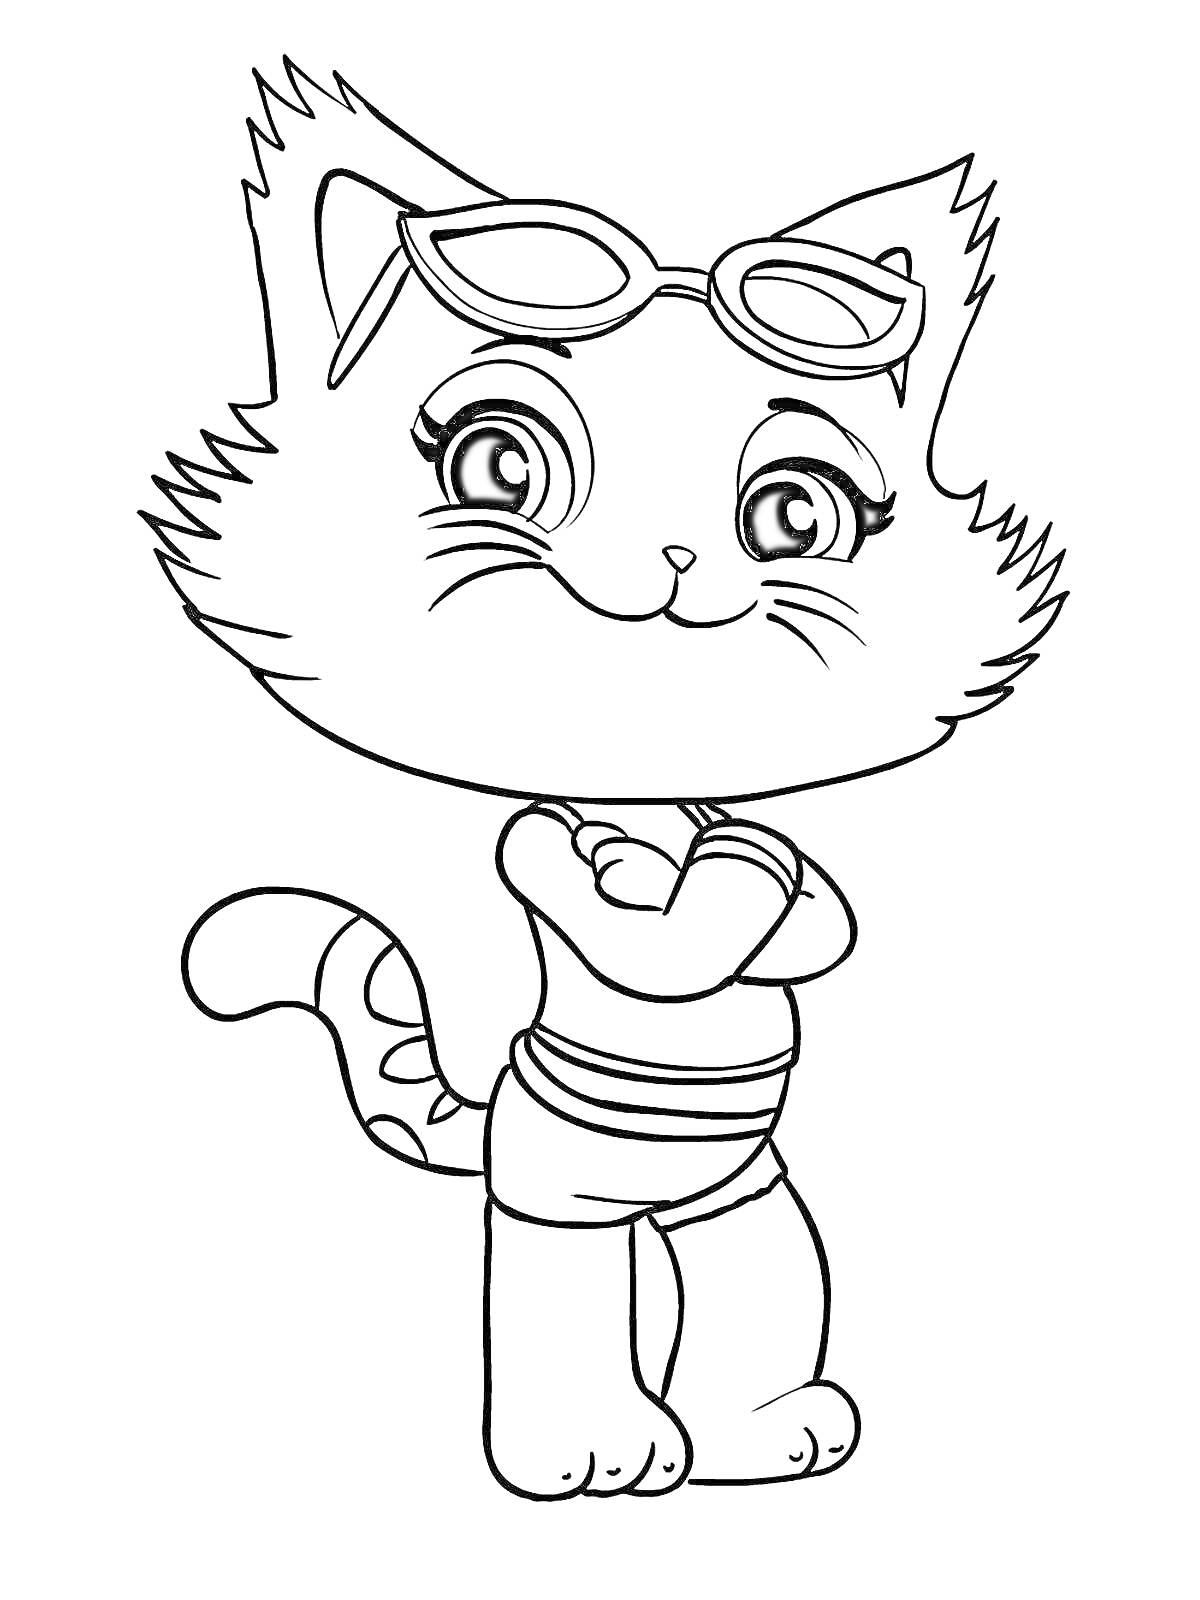 Раскраска Кошка в купальнике и солнцезащитных очках с скрещенными лапами на груди